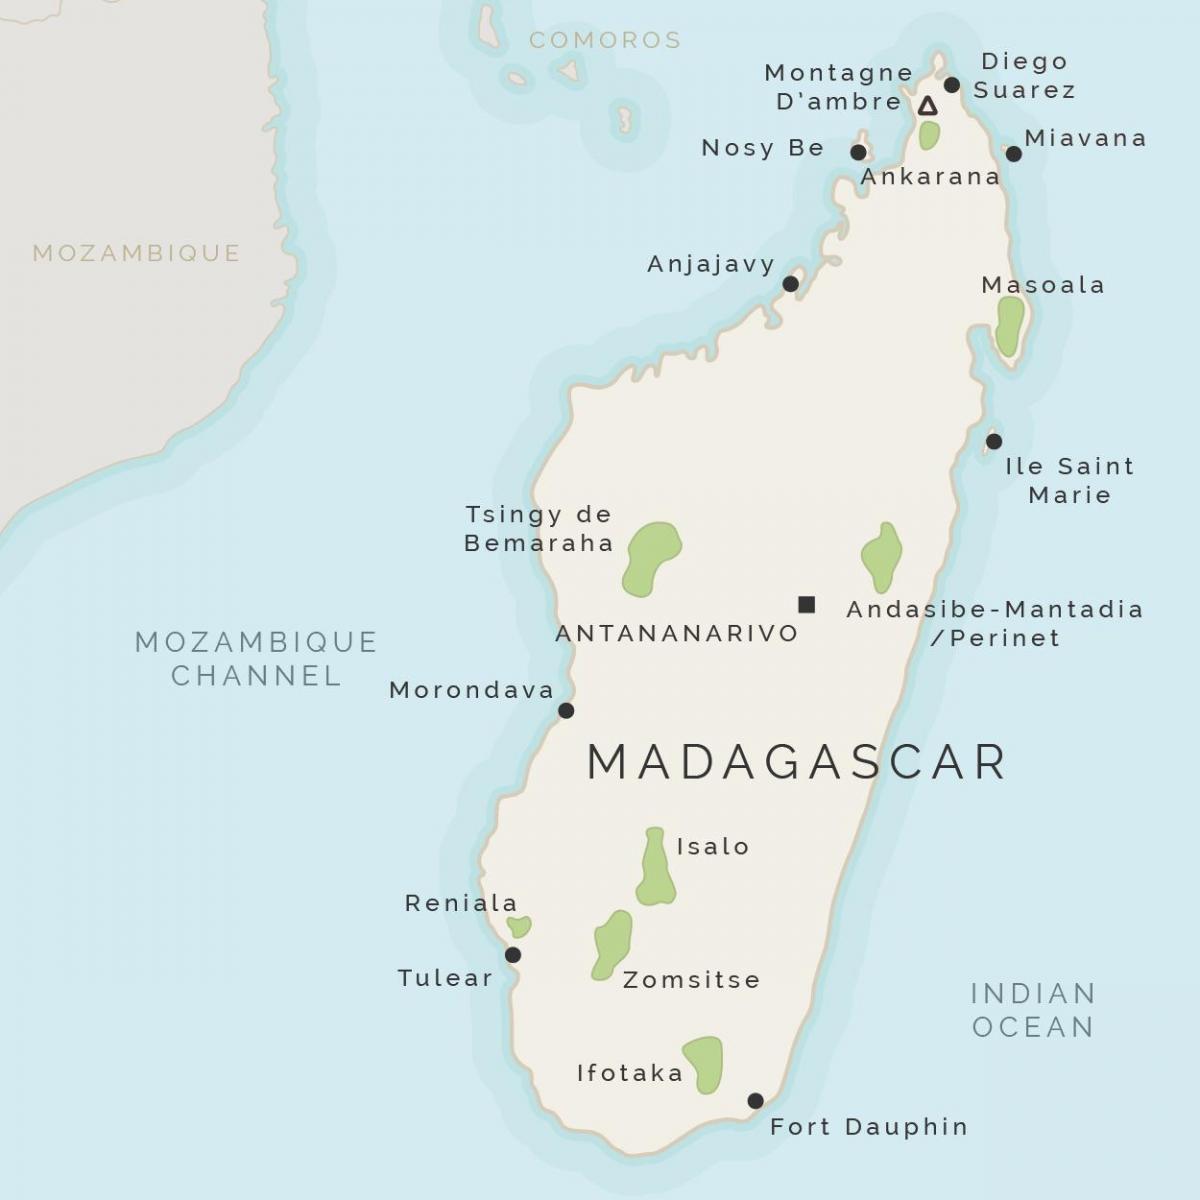 नक्शा मेडागास्कर के और आसपास के द्वीपों